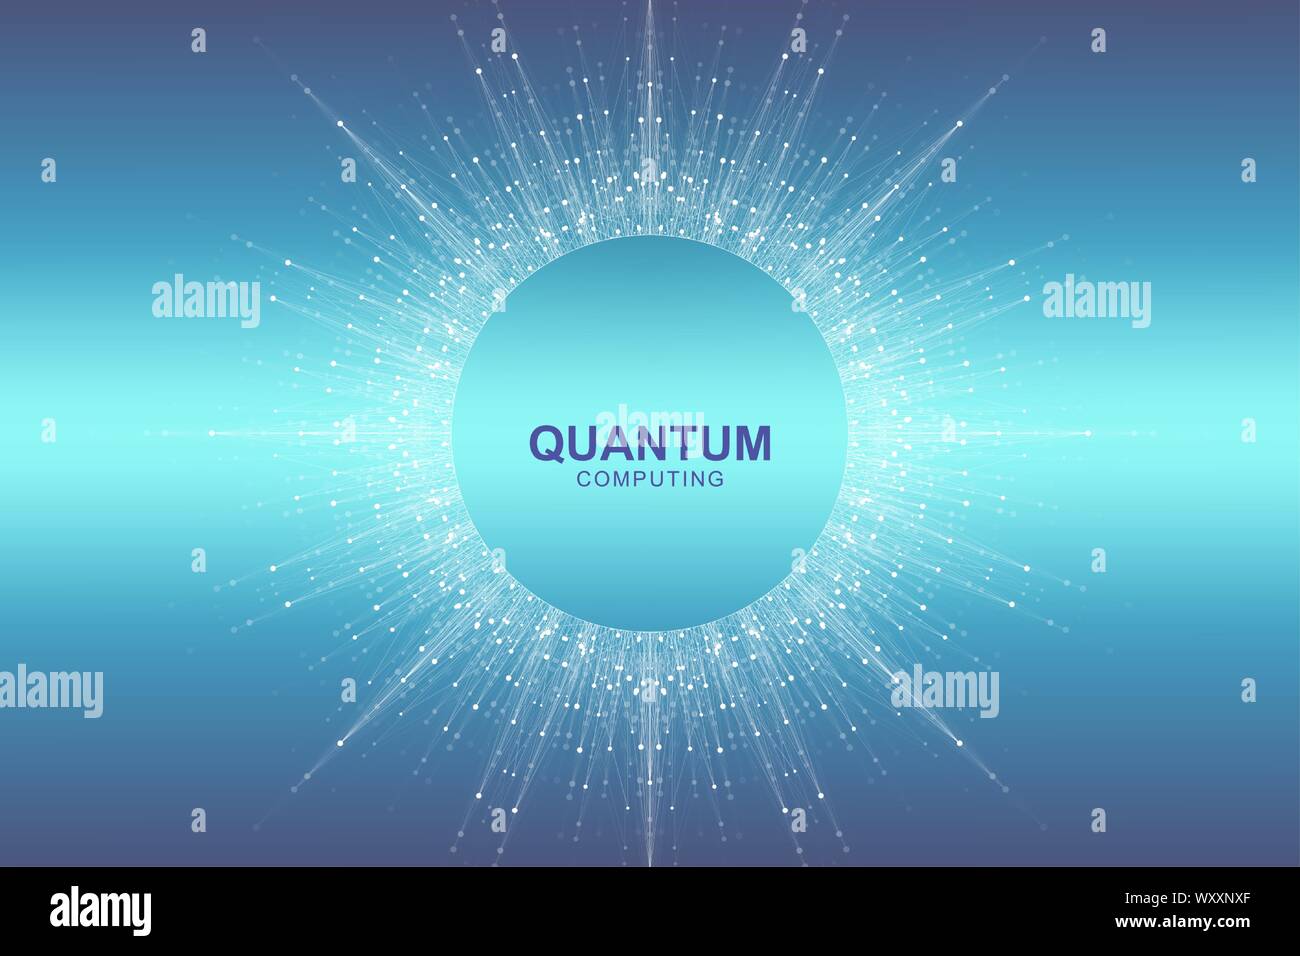 La technologie de l'ordinateur quantique circulaire concept. Explosion sphère arrière-plan. L'apprentissage en profondeur de l'intelligence artificielle. Algorithmes de big data visualization Illustration de Vecteur